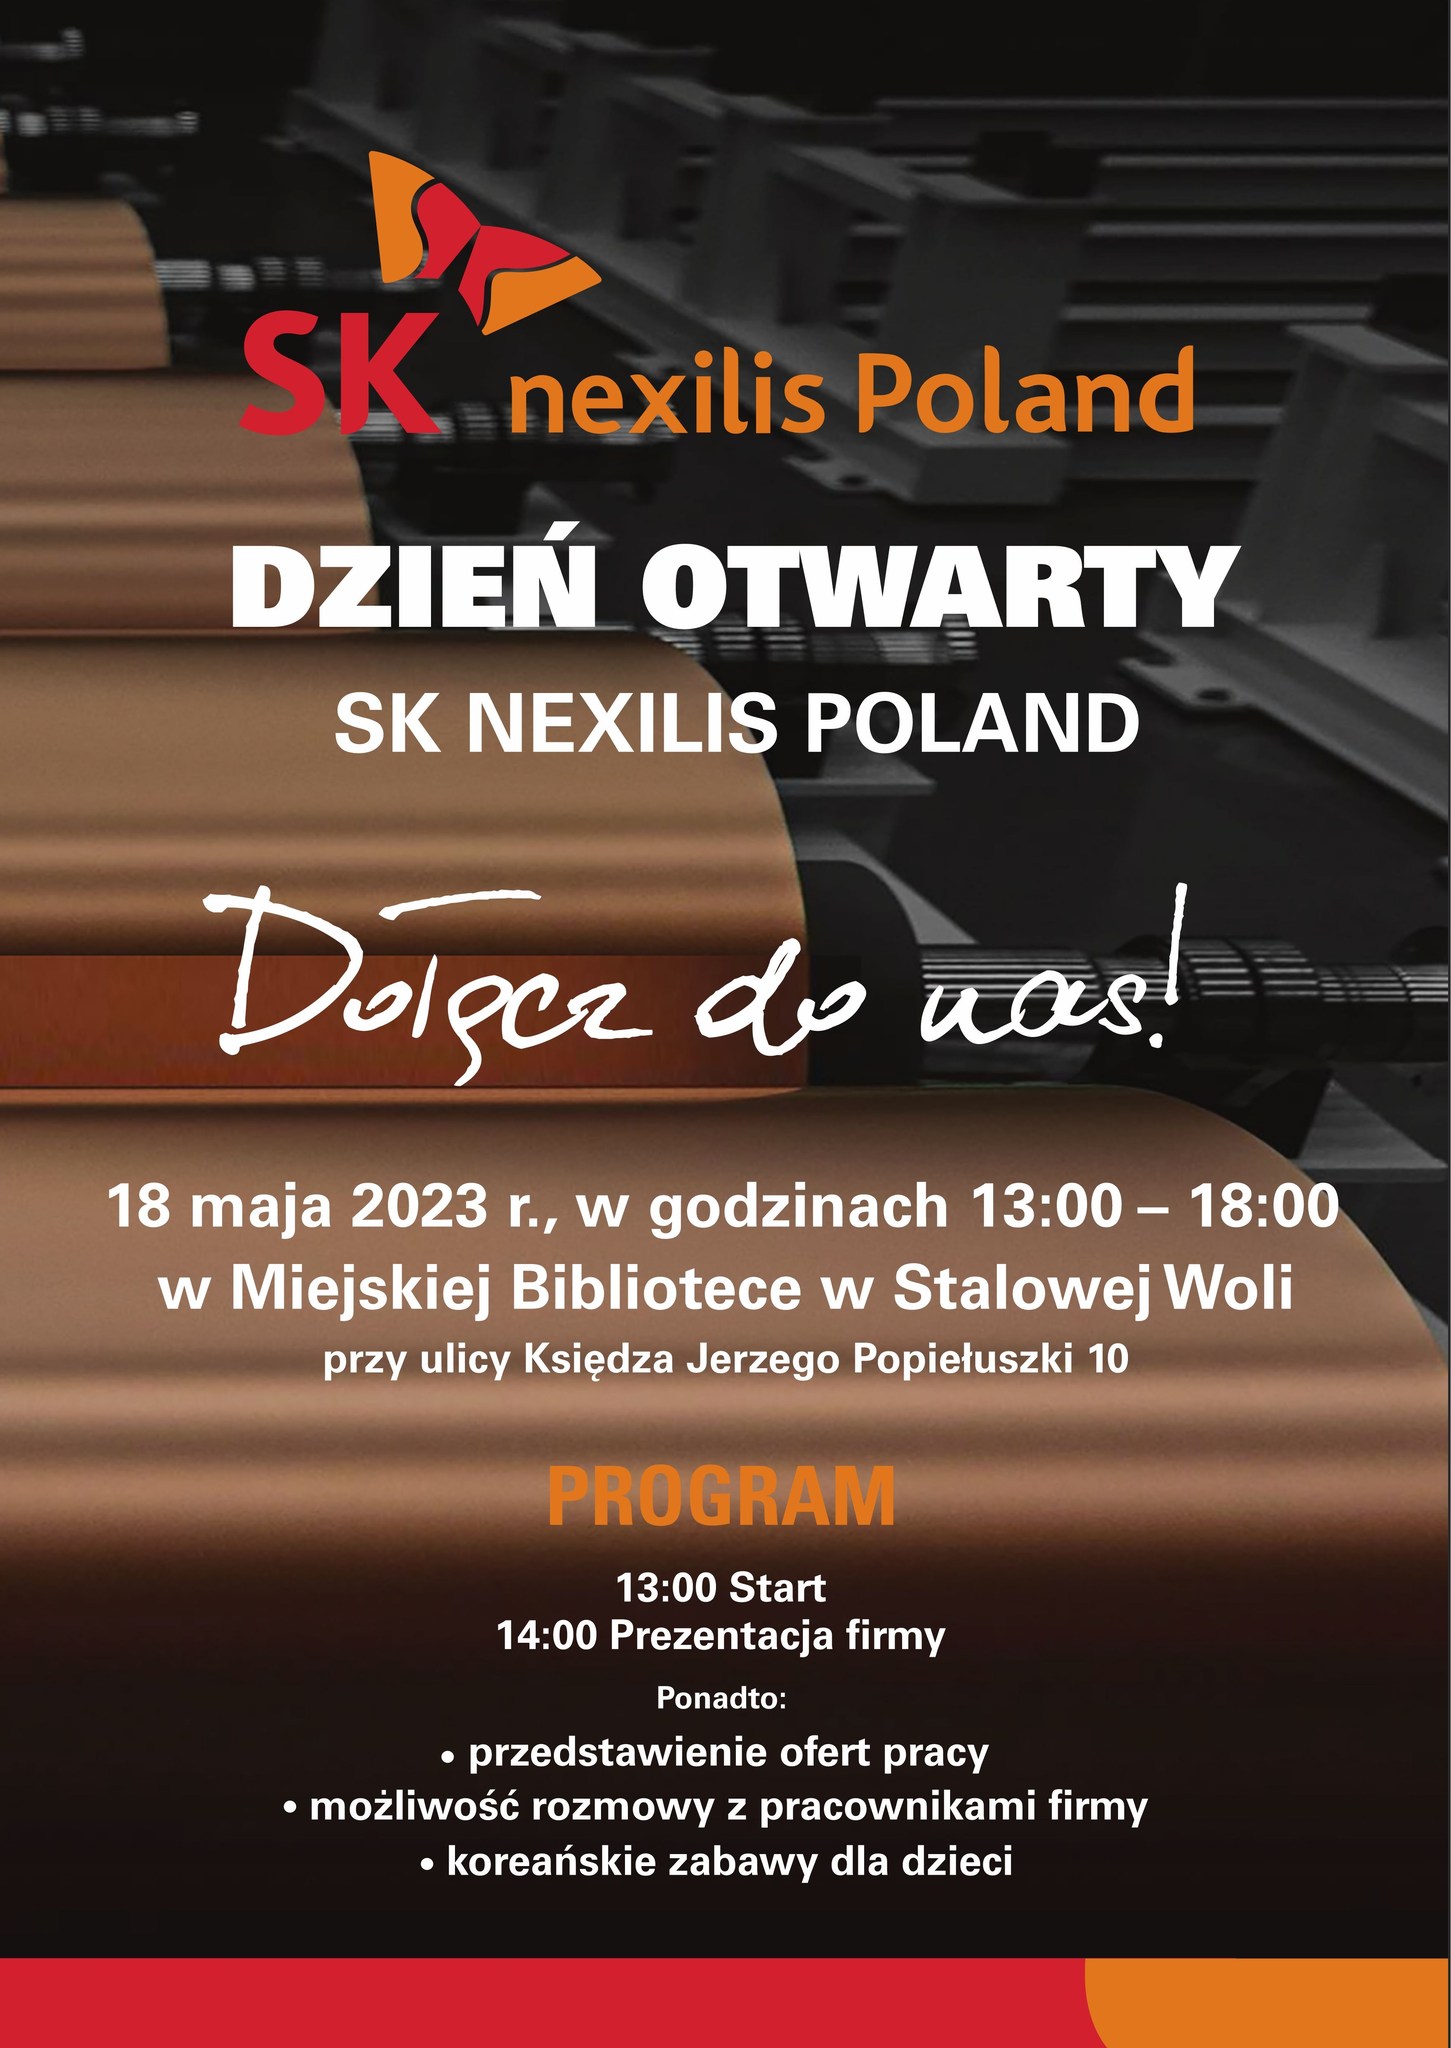 Dzień otwarty SK nexilis Poland